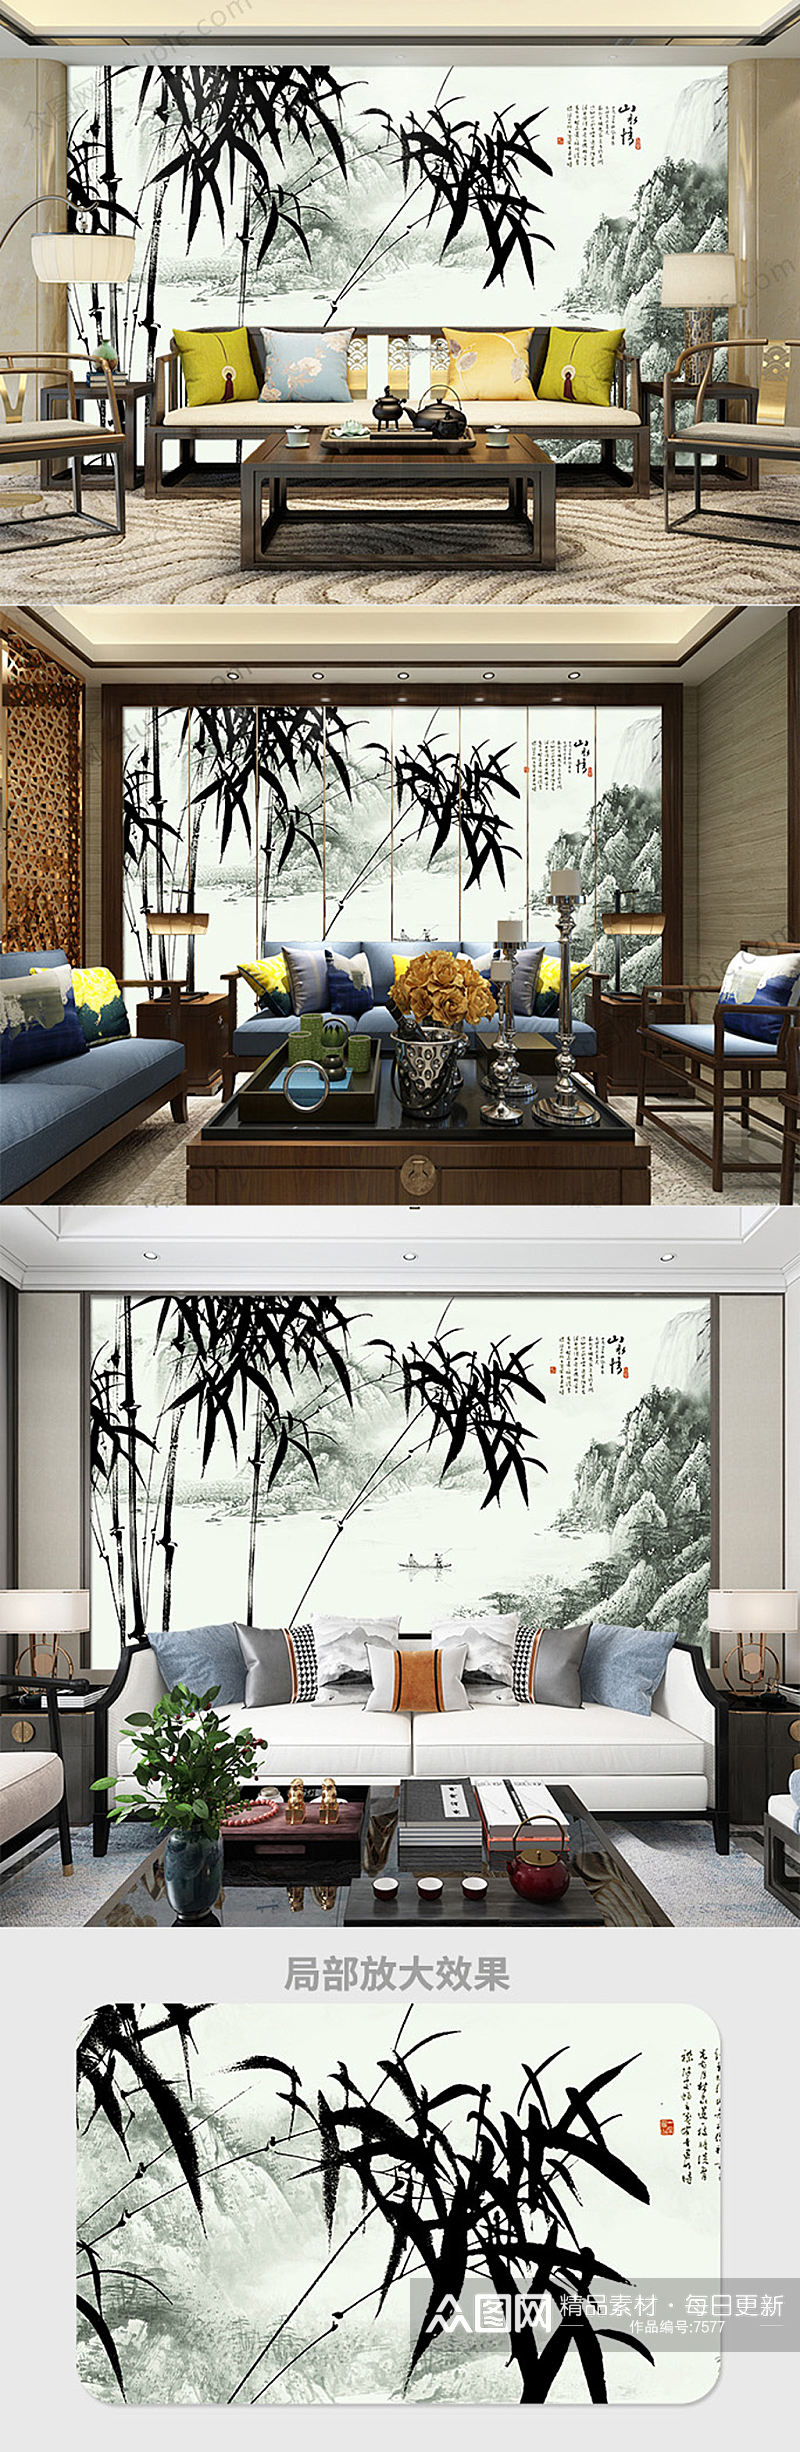 中式竹林山水画背景墙素材